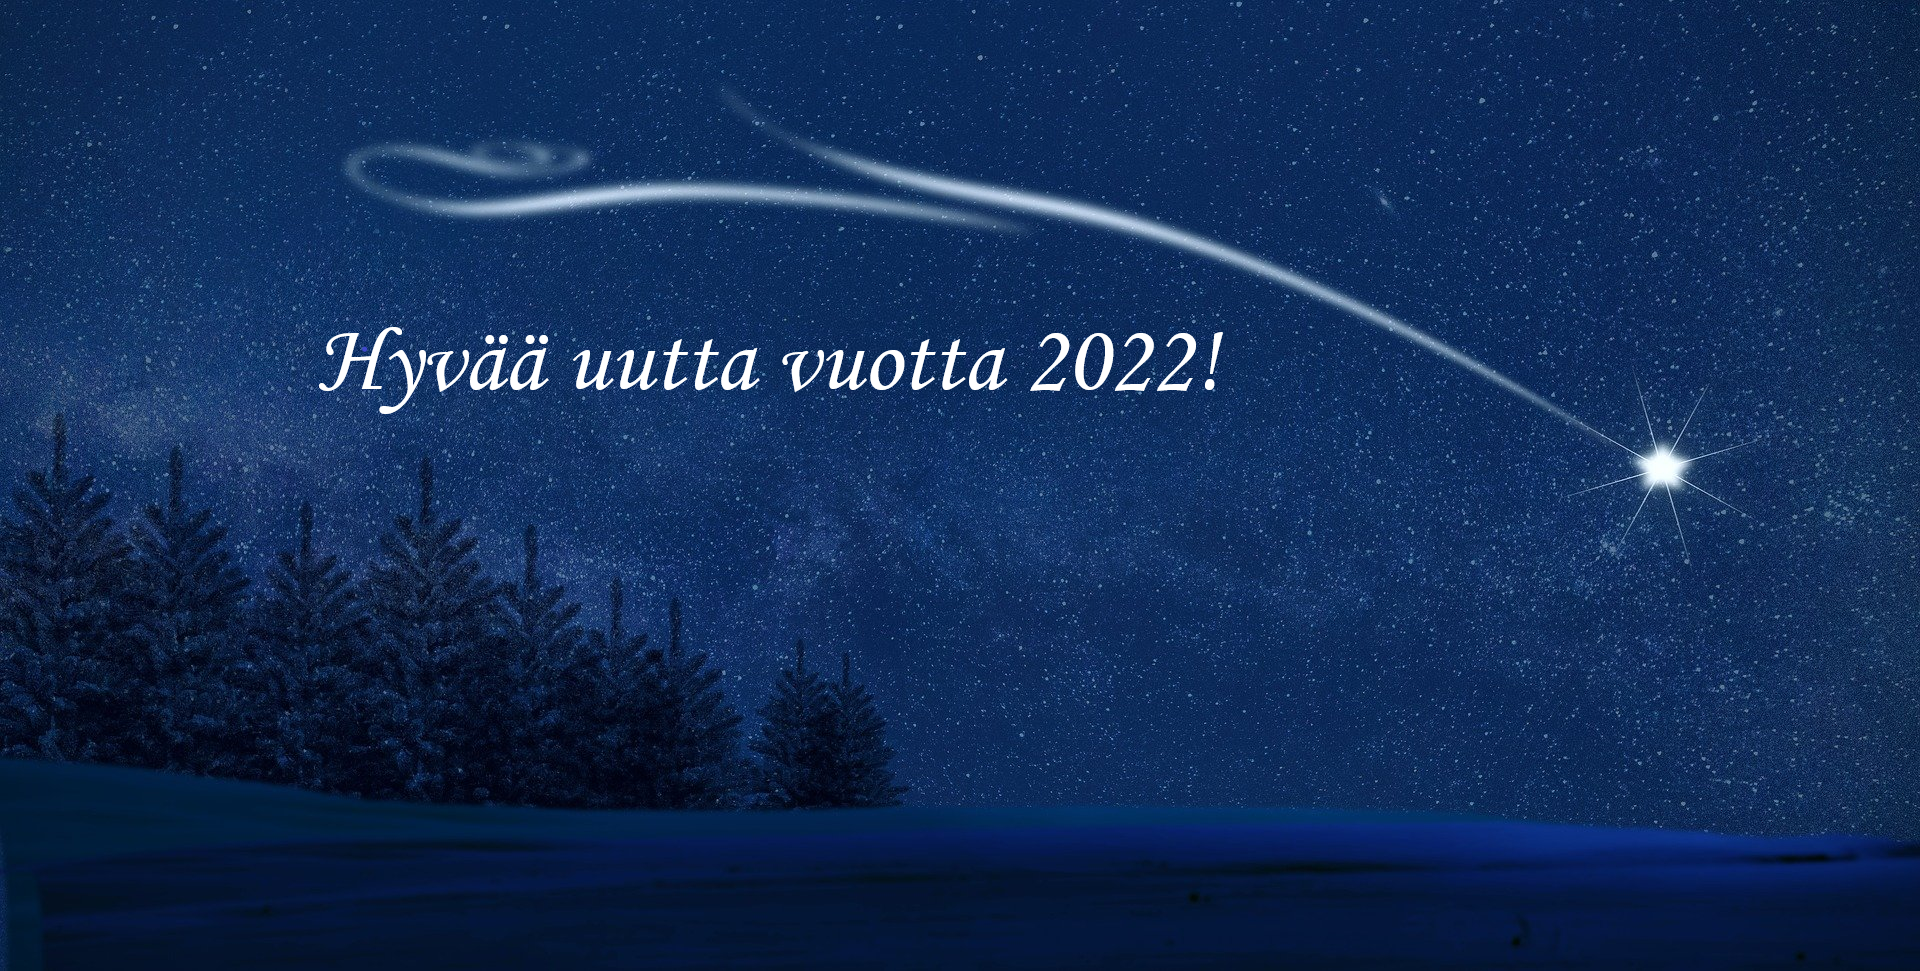 Hyvaa Uutta Vuotta 2022